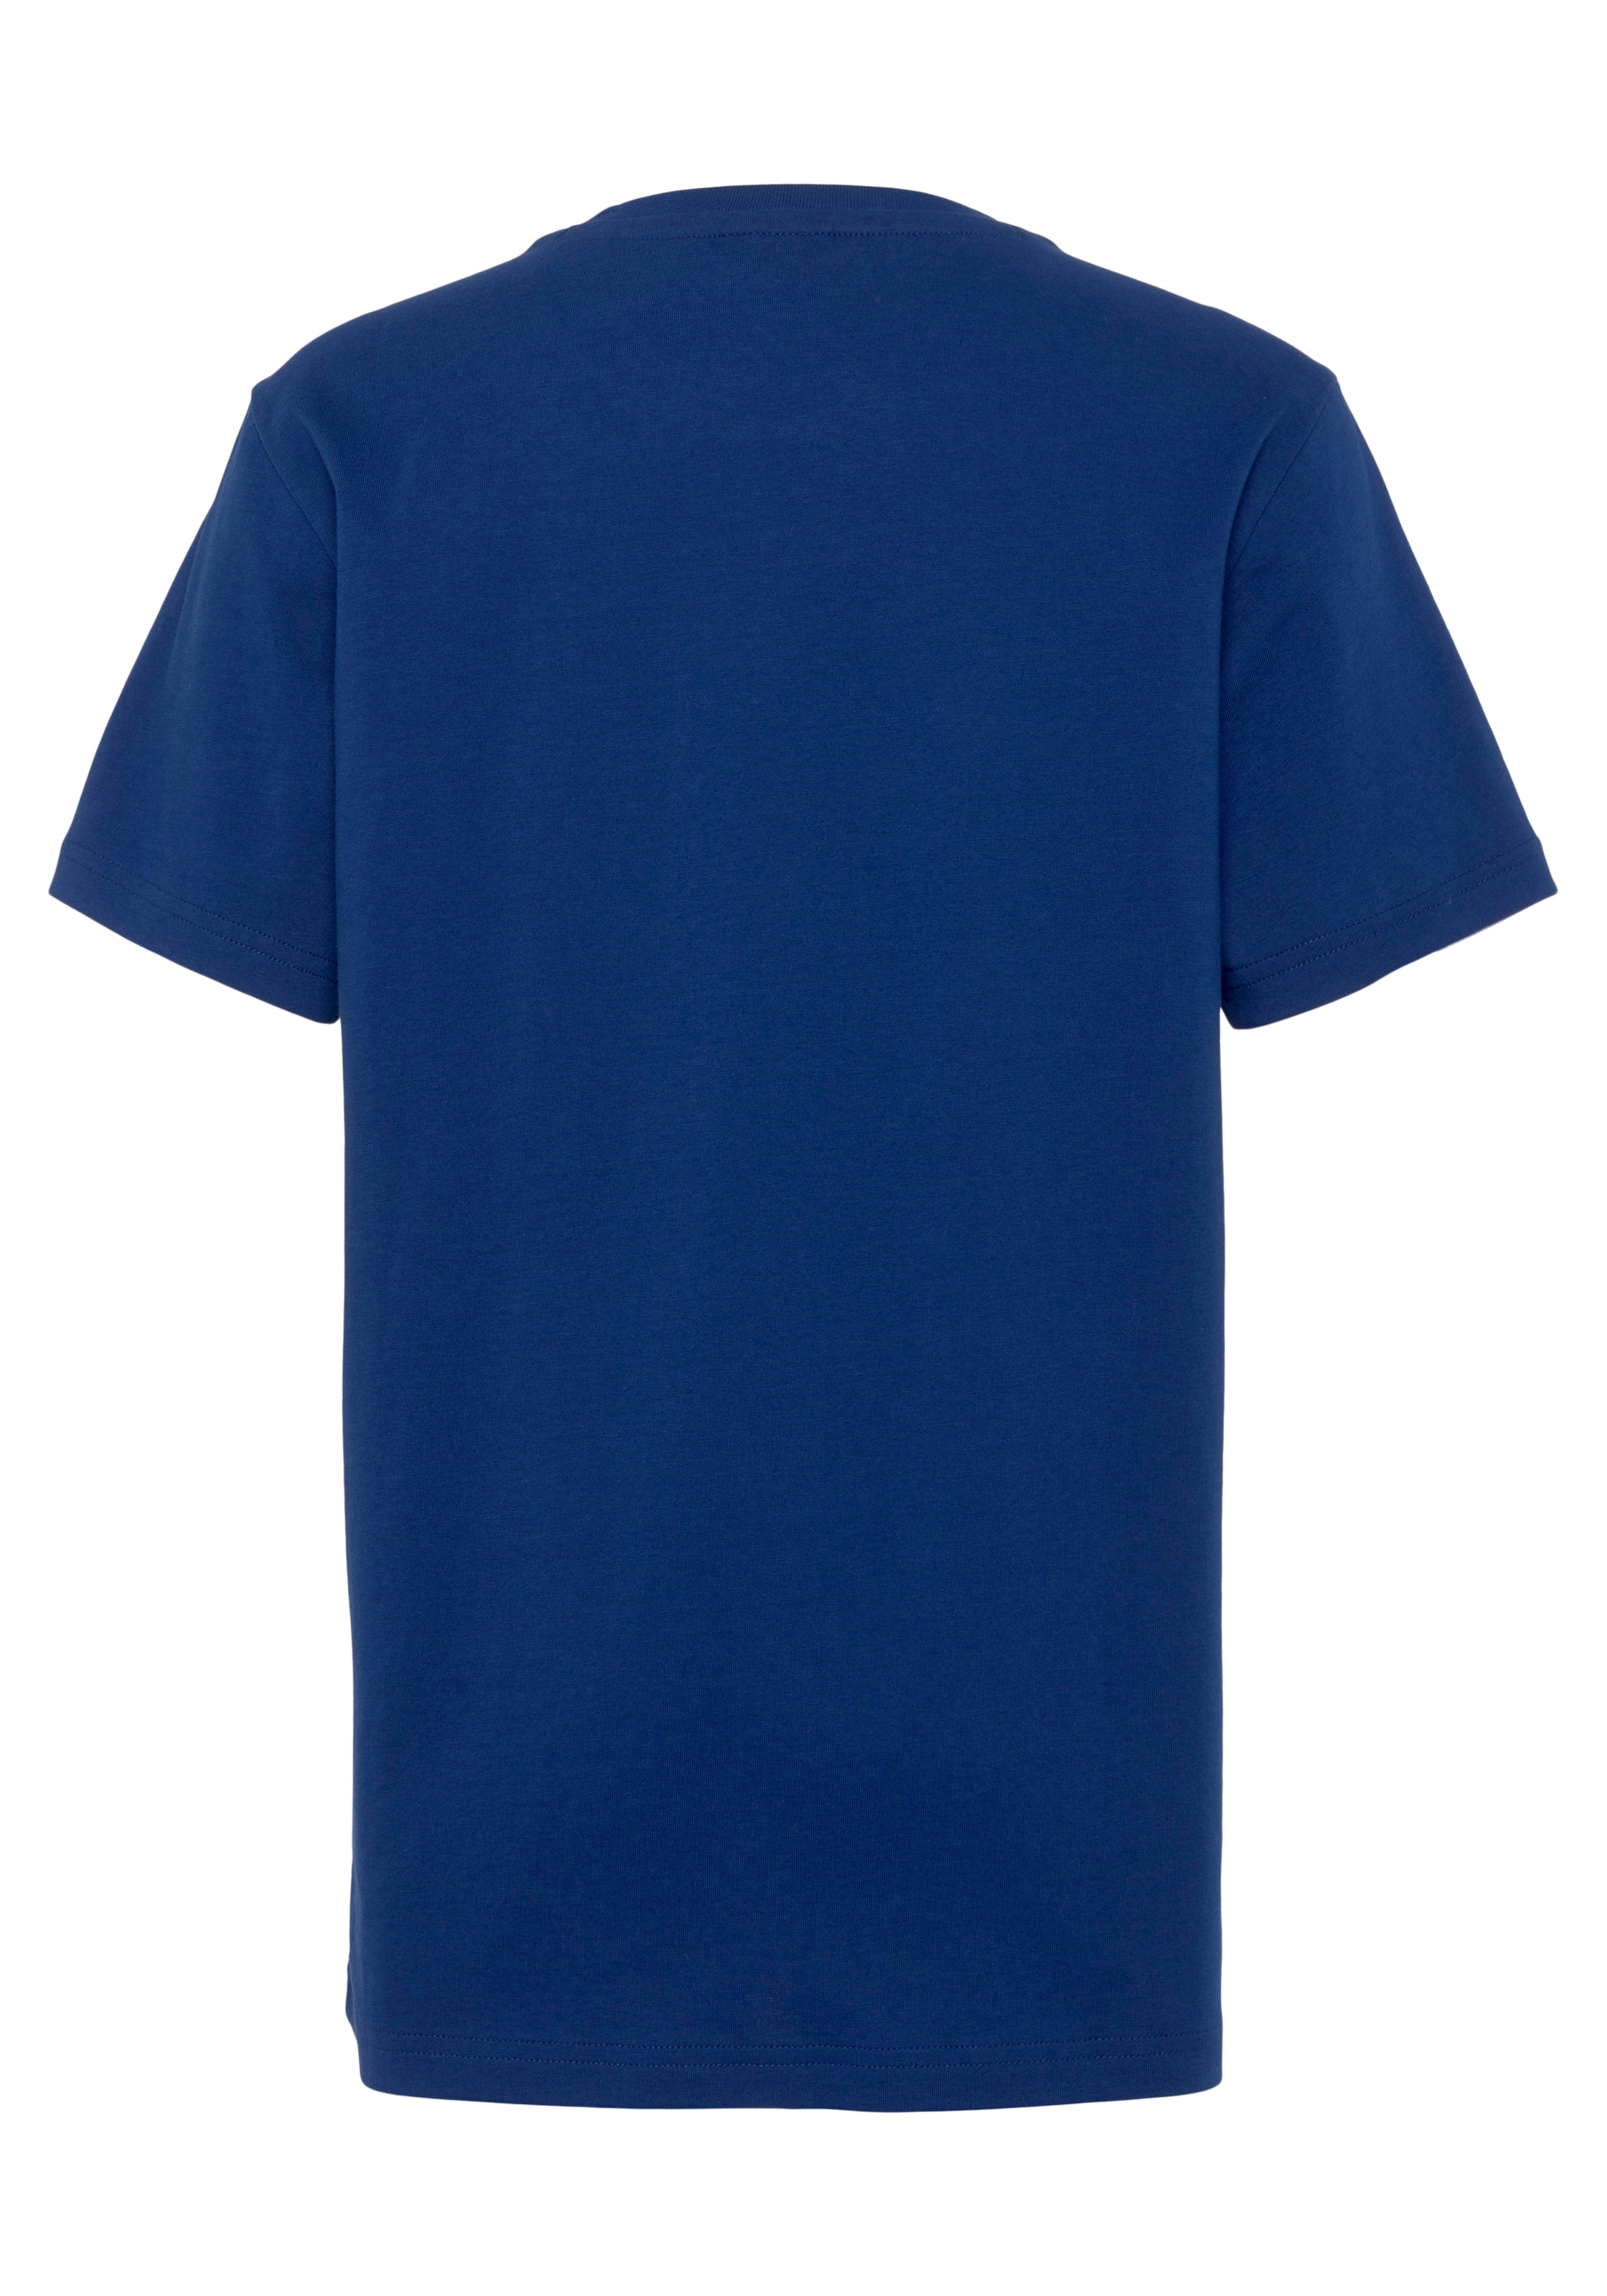 Champion Crewneck T-Shirt bestellen für Jelmoli-Versand günstig »Graphic | Kinder« Shop - ✵ T-Shirt